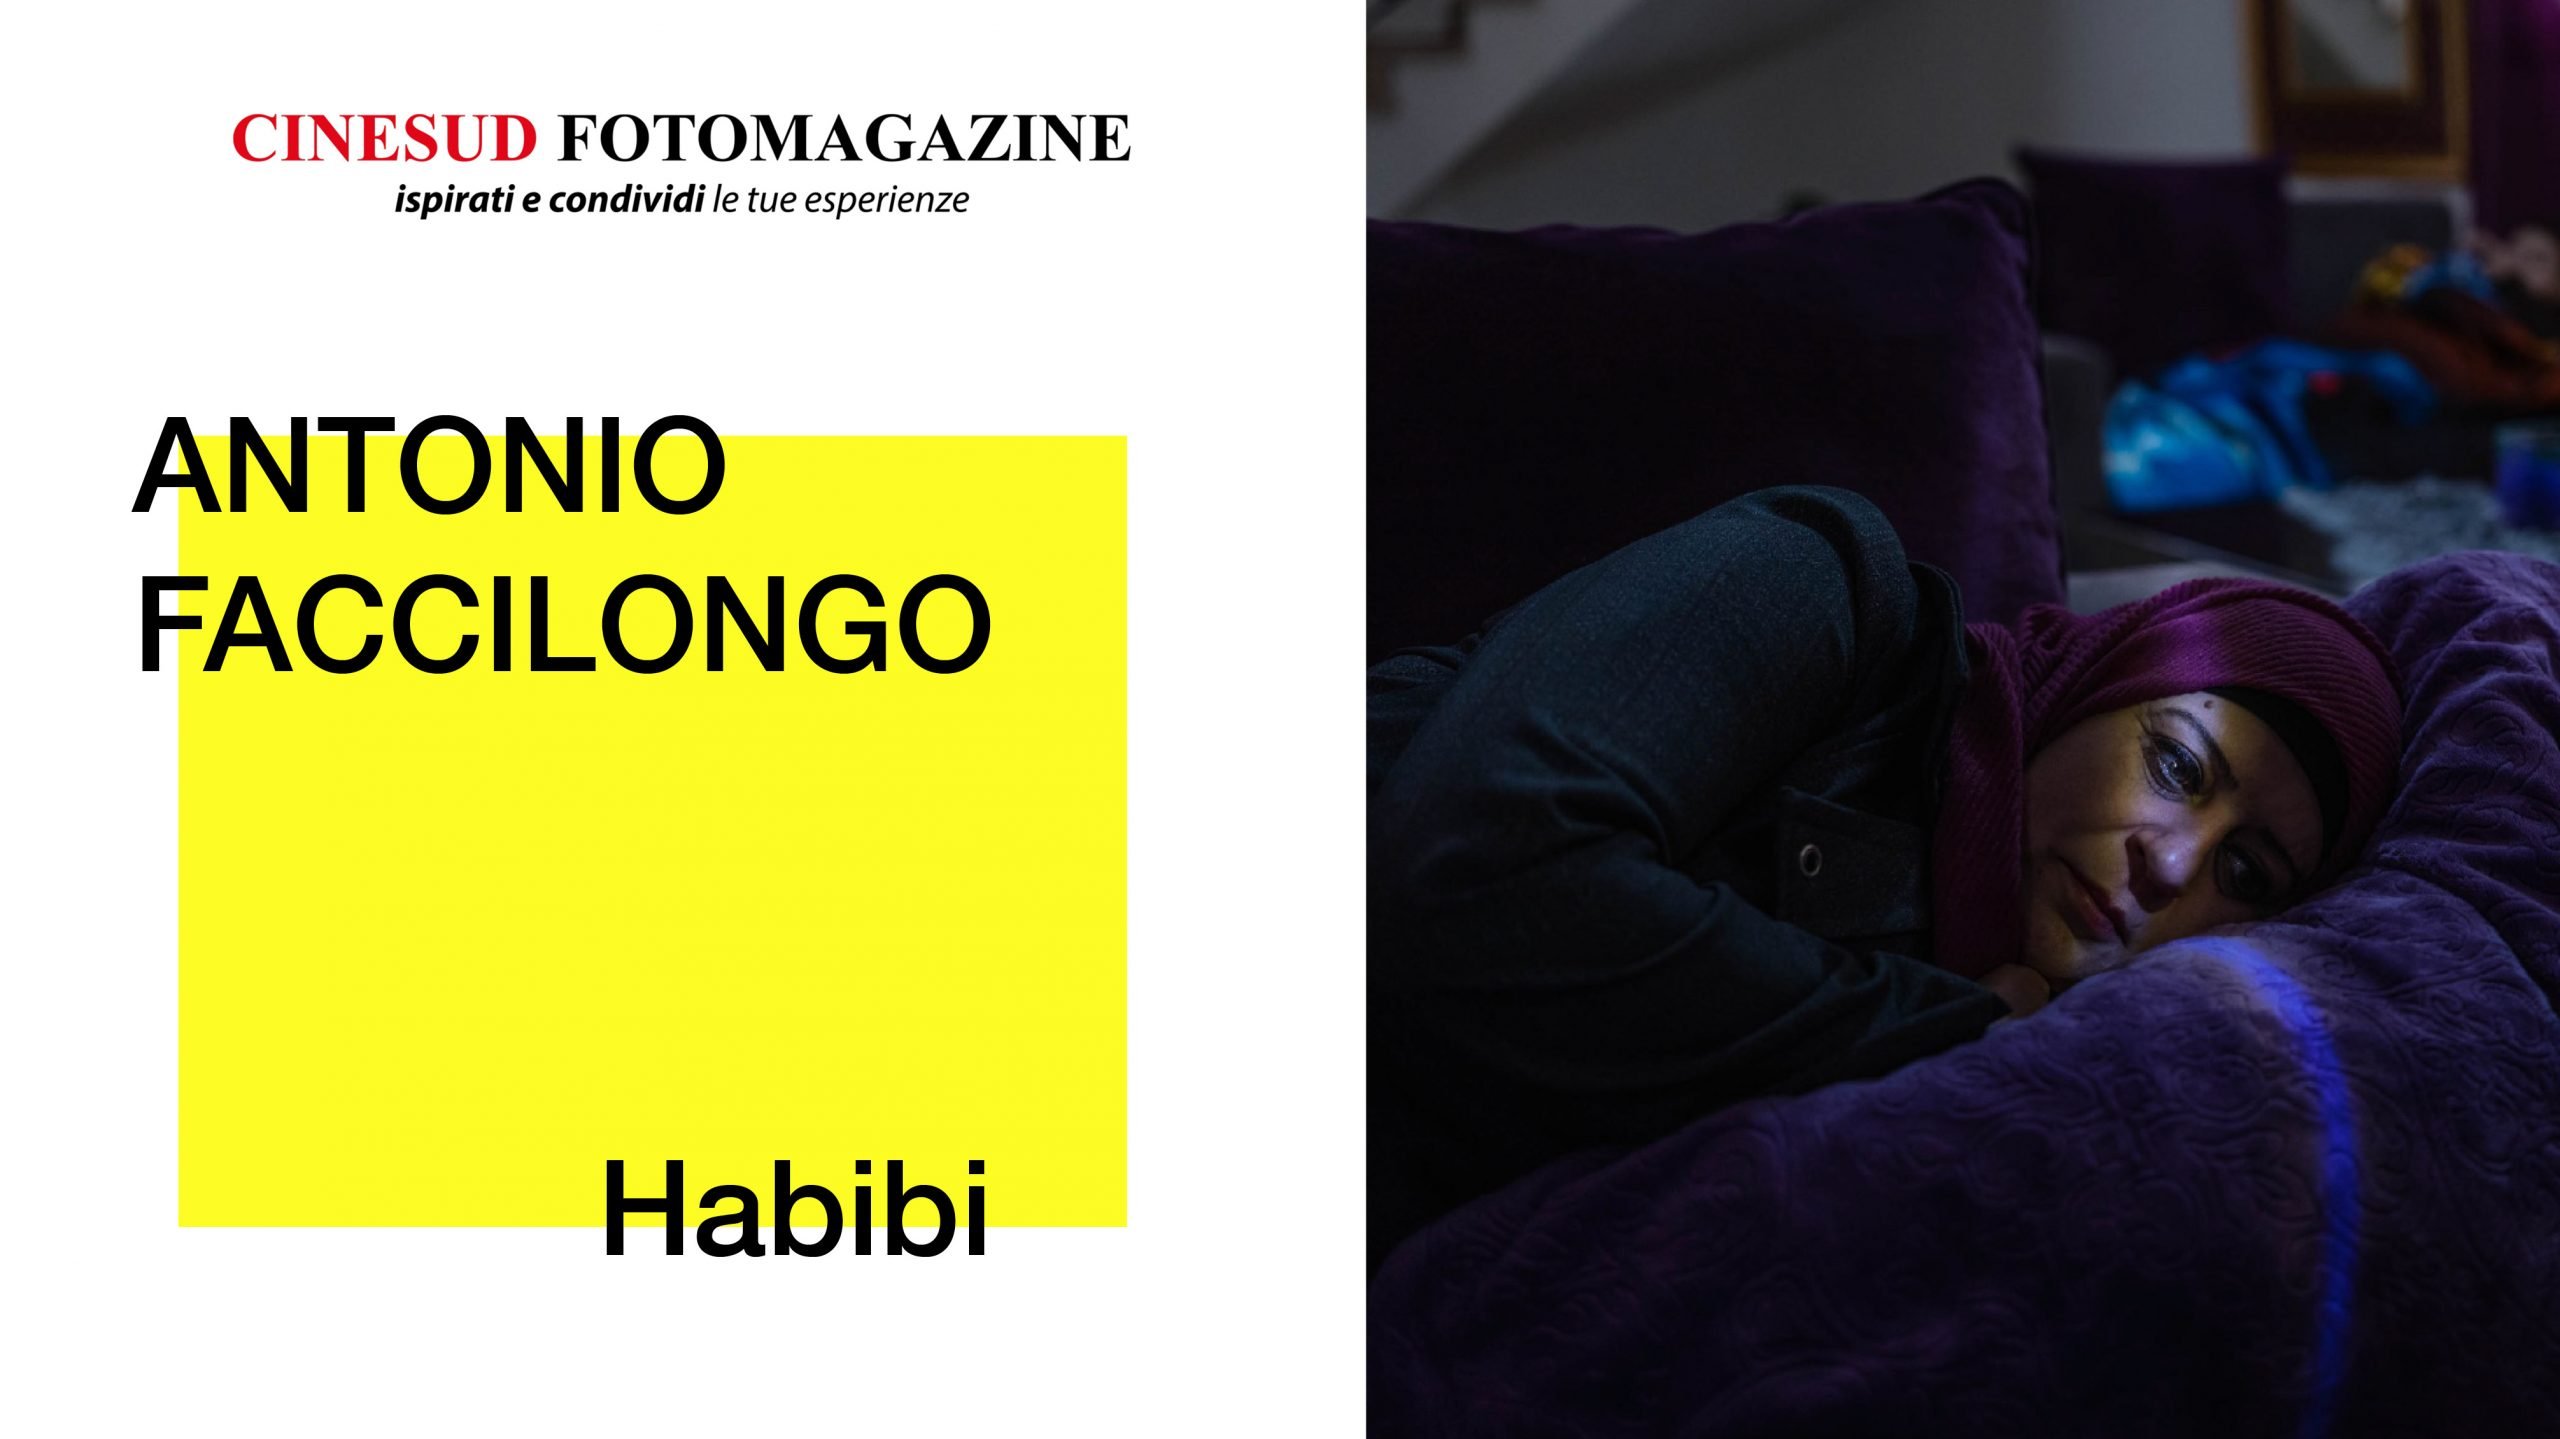 Antonio Faccilongo - "Habibi"